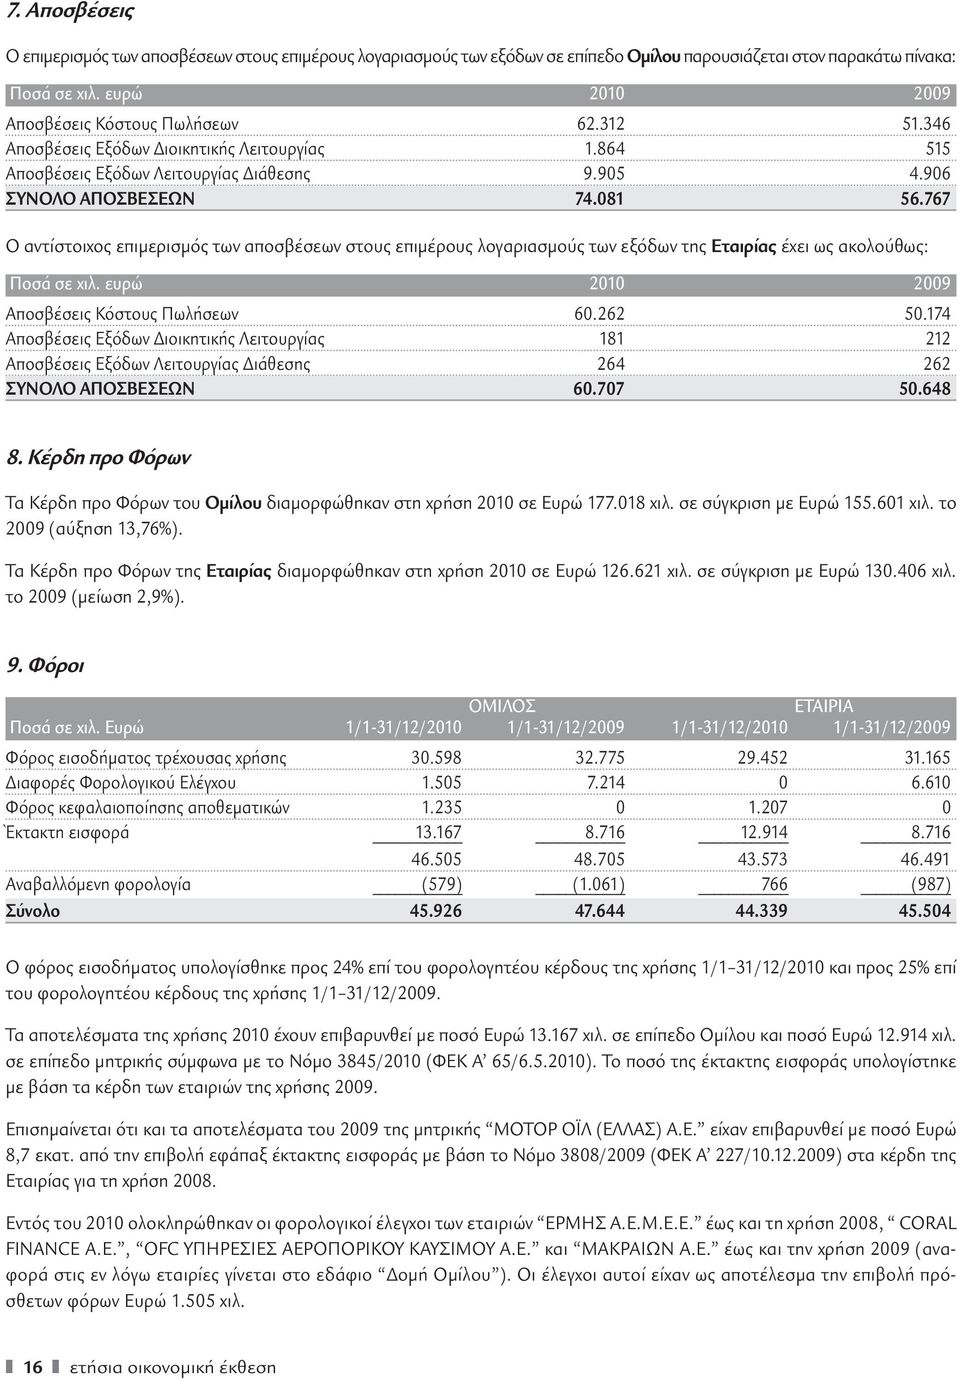 767 Ο αντίστοιχος επιμερισμός των αποσβέσεων στους επιμέρους λογαριασμούς των εξόδων της Εταιρίας έχει ως ακολούθως: Ποσά σε χιλ. ευρώ 2010 2009 Αποσβέσεις Κόστους Πωλήσεων 60.262 50.